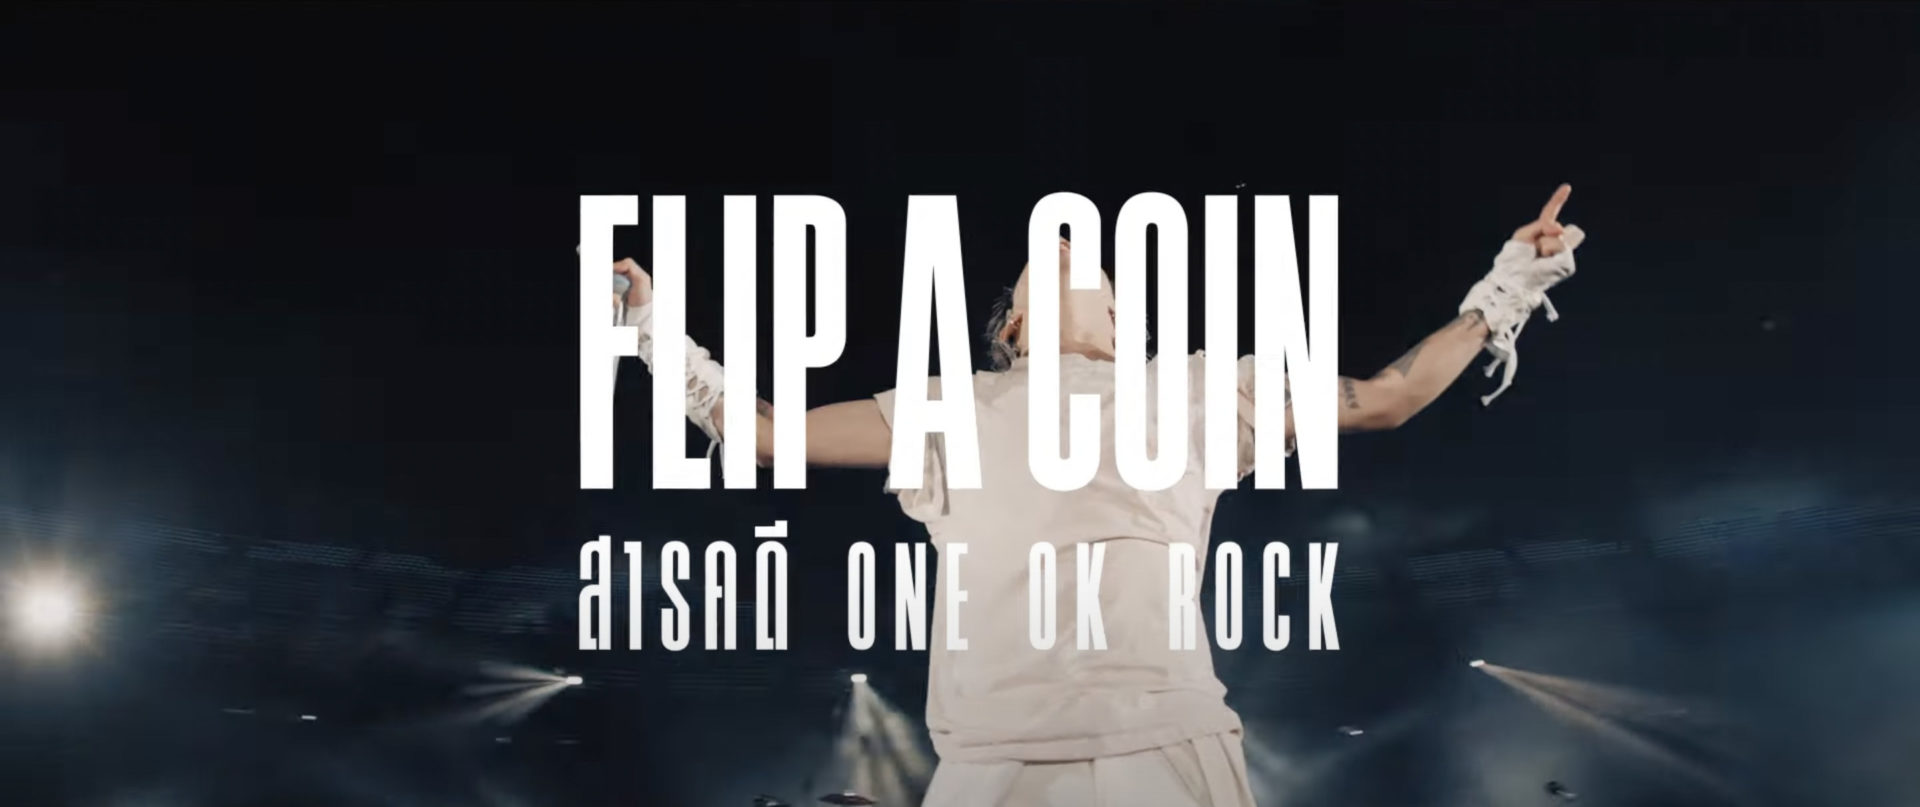 [รีวิว] “FLIP A COIN สารคดี ONE OK ROCK” เบื้องลึกชีวิตและเบื้องหลังคอนเสิร์ตไลฟ์สตรีมสุดอลังในยุคโควิด